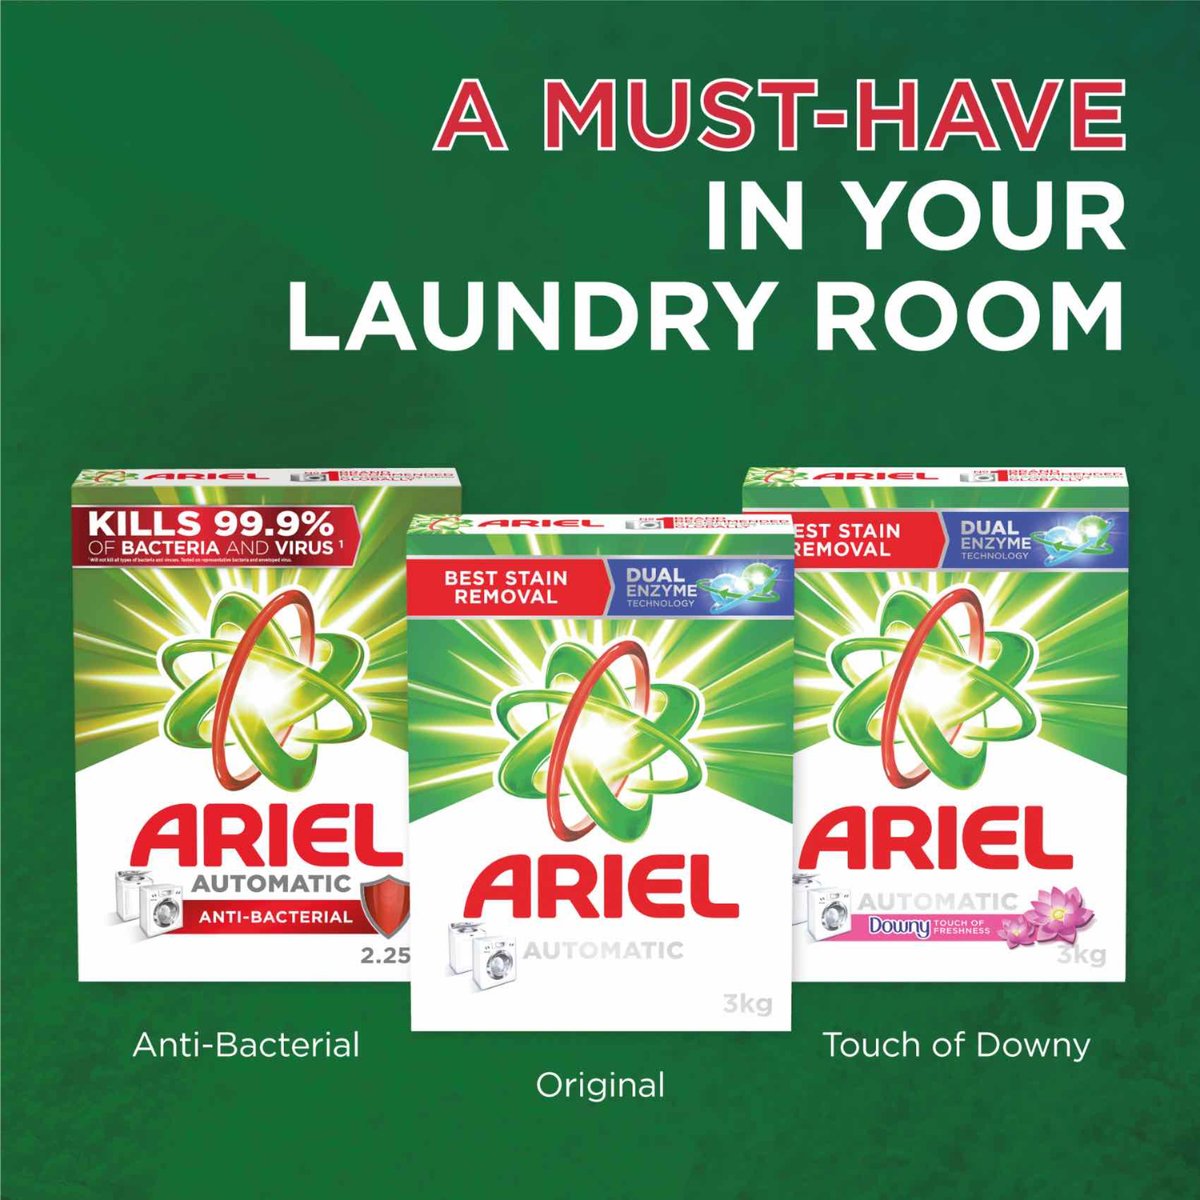 Ariel Automatic Powder Laundry Detergent, Original Scent, 2 x 7 kg